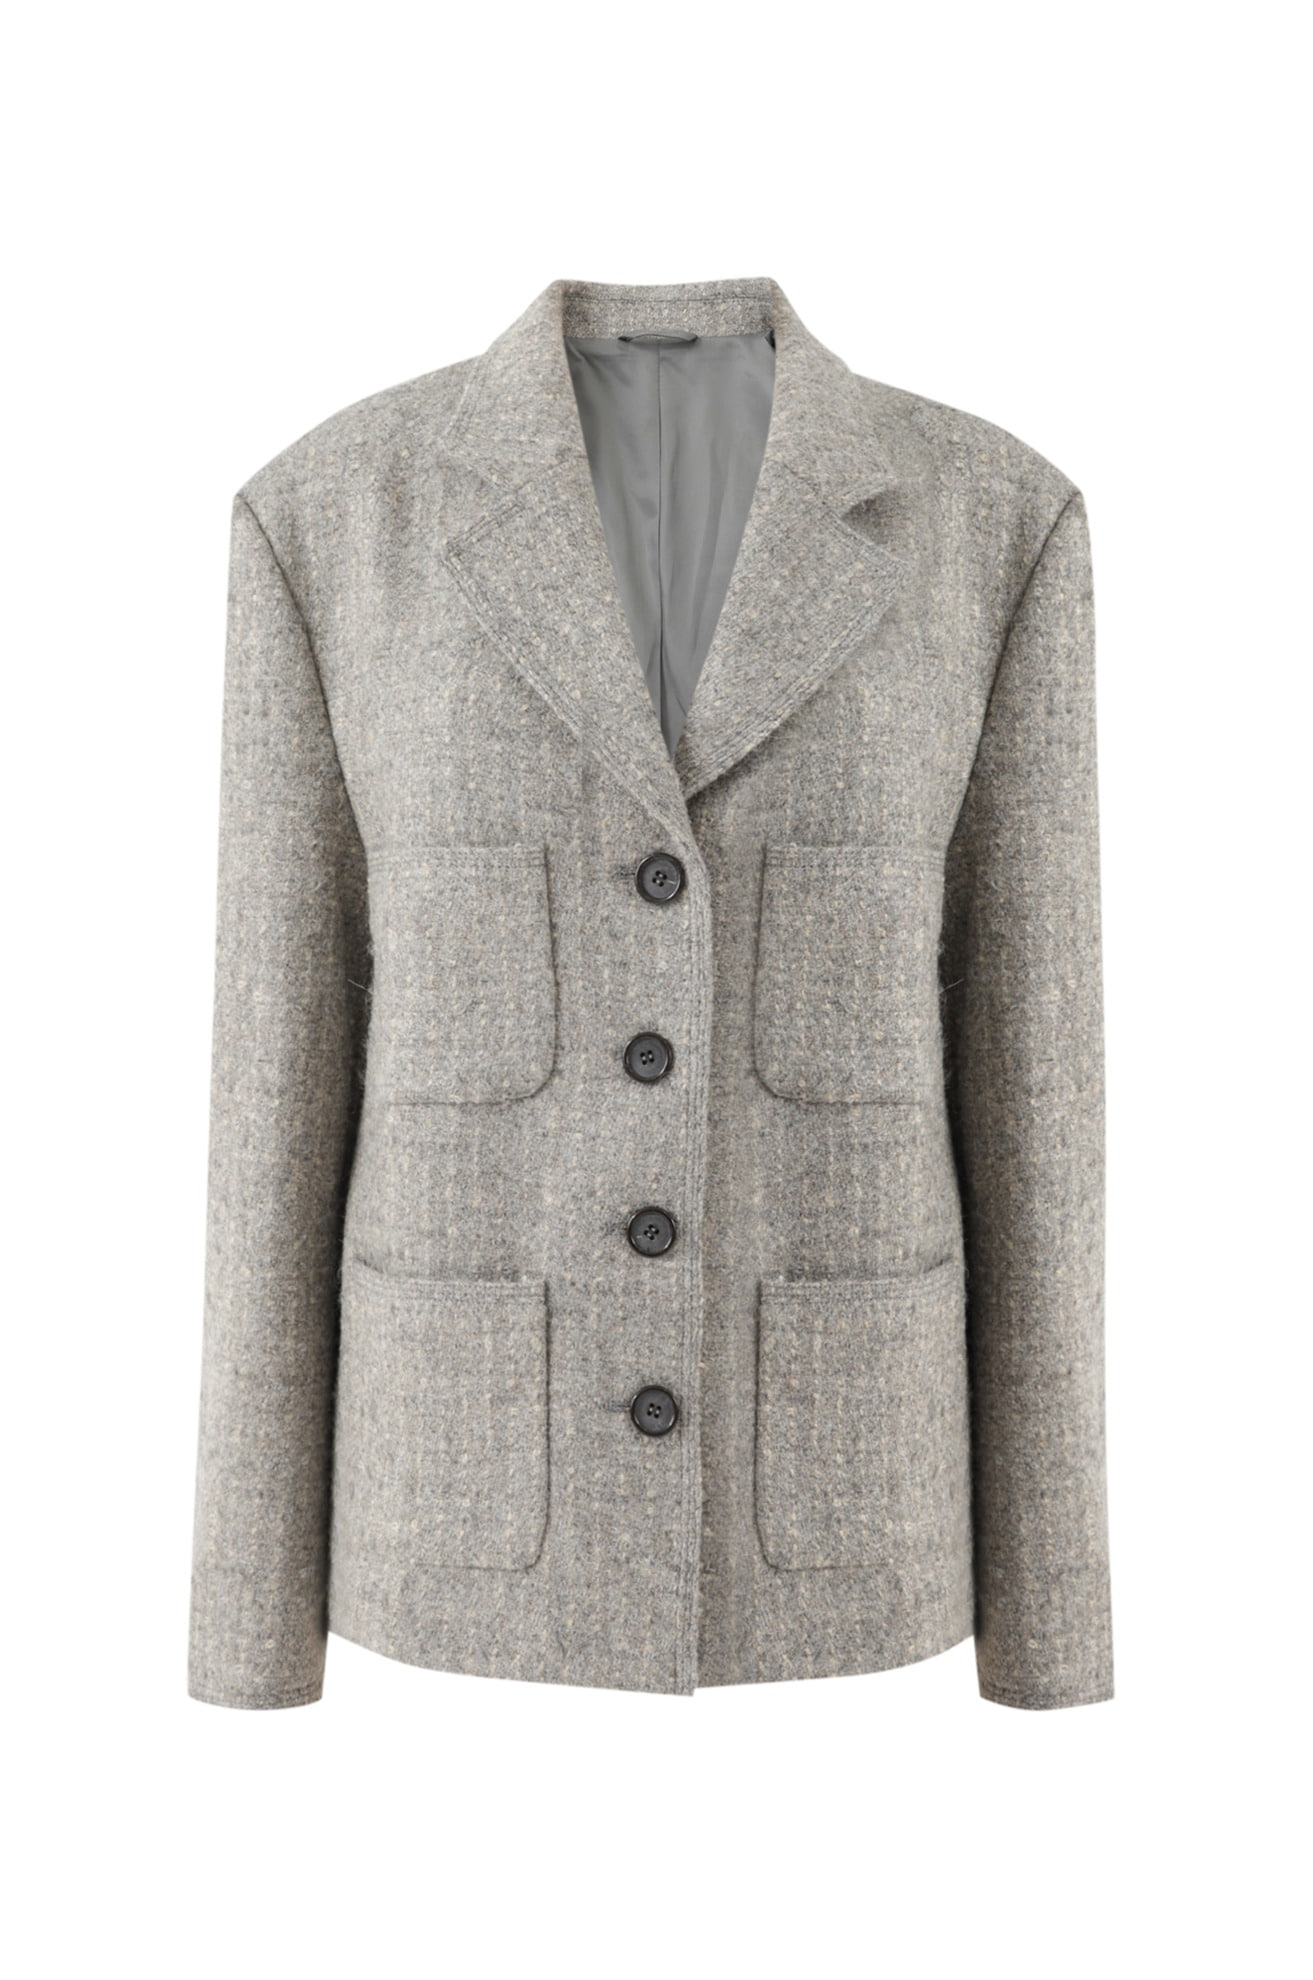 Abraham Fancy Yarn Tweed Jacket (GRAY)